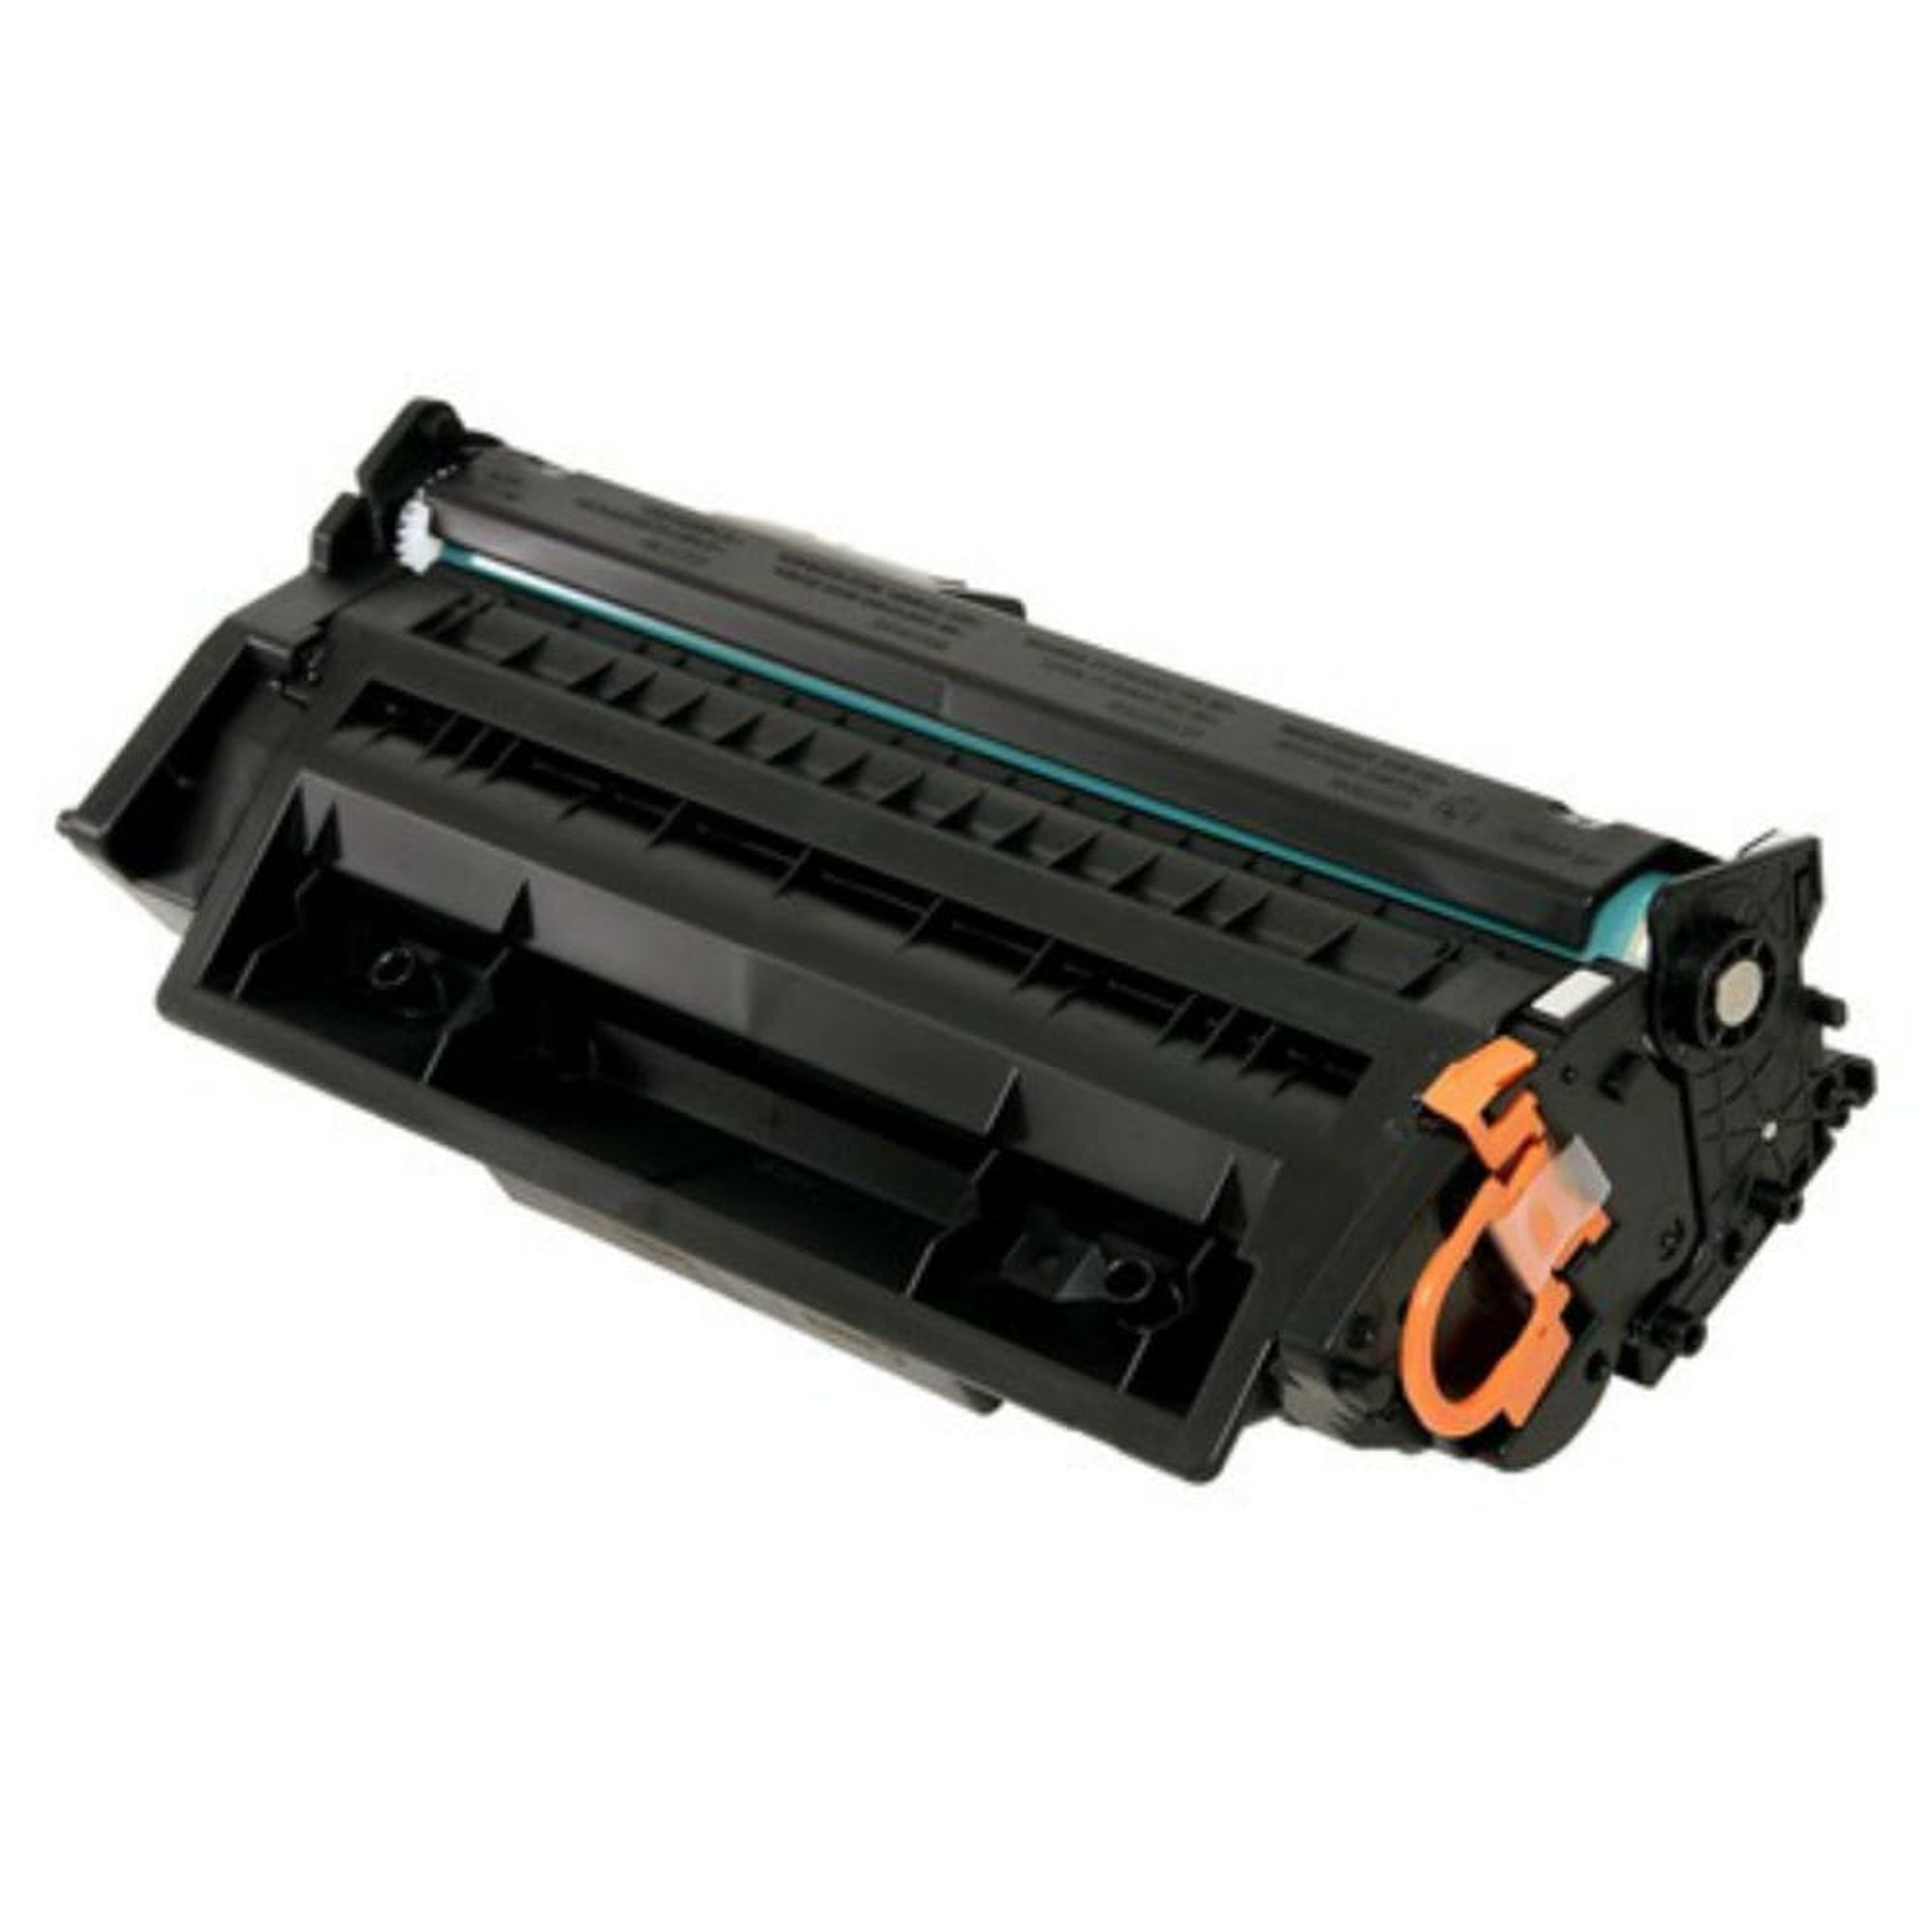 Regular Toner for Canon ImageClass MF5850, 5880, 5950, LBP 6300, Laser Printer